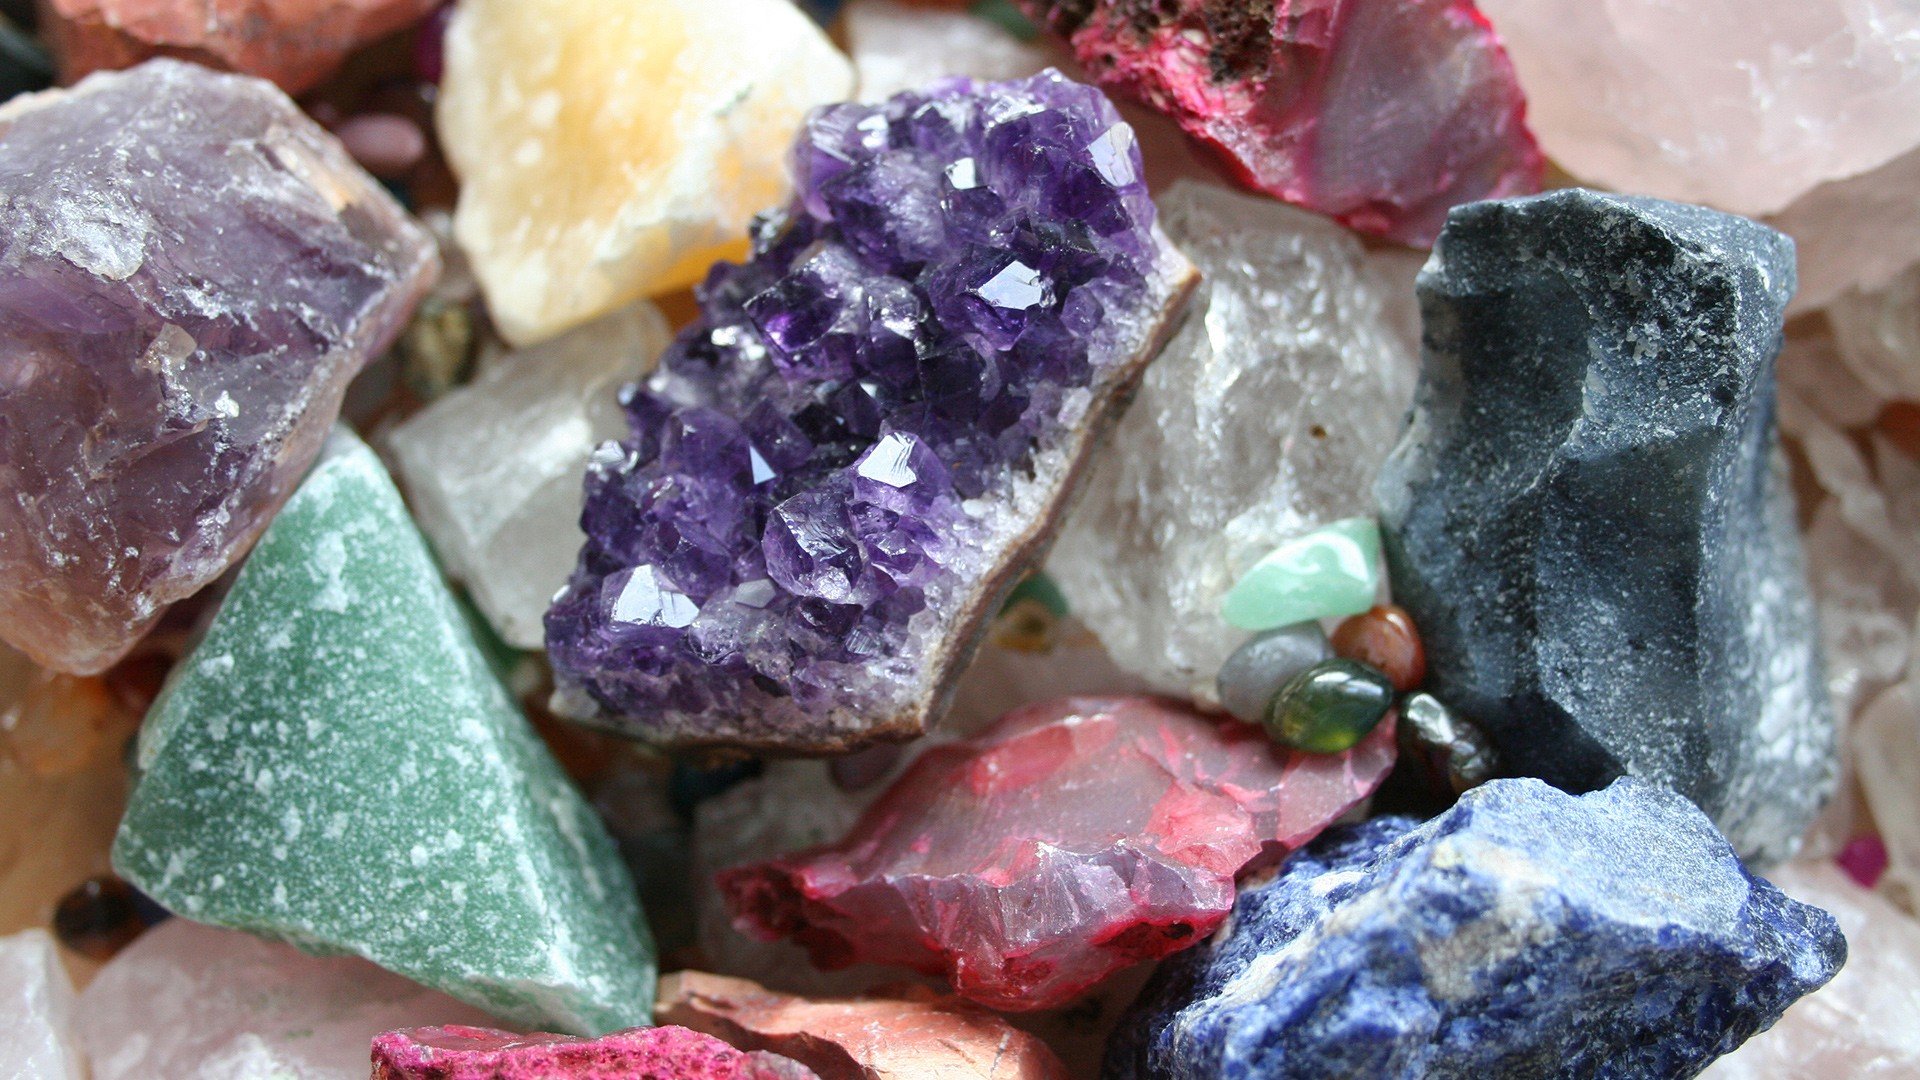 stones, Crystals, Digital, Art, Minerals, Geology, Quartz, Colors Wallpaper HD / Desktop and Mobile Background